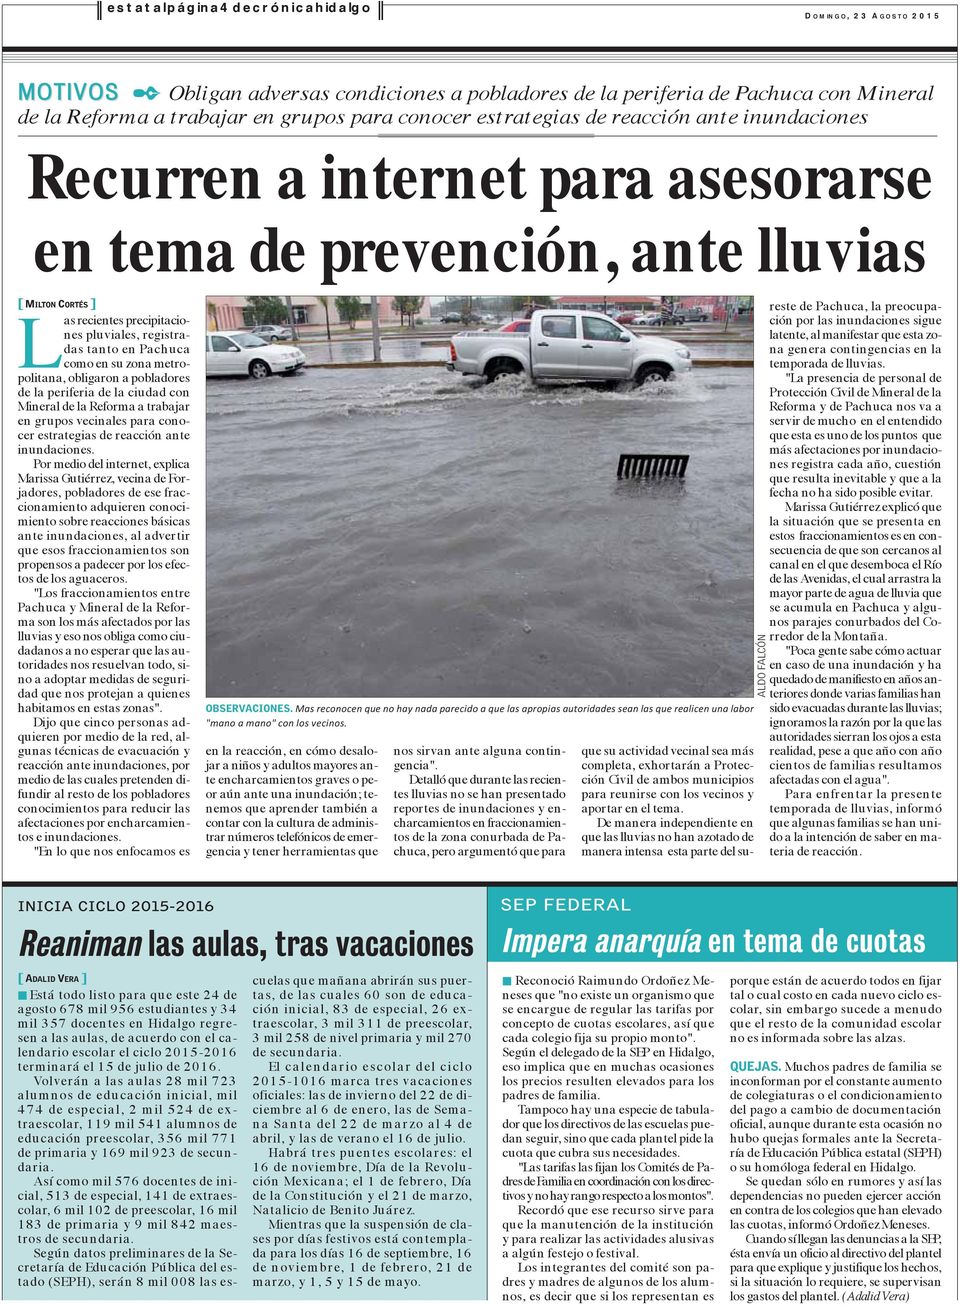 metropolitana, obligaron a pobladores de la periferia de la ciudad con Mineral de la Reforma a trabajar en grupos vecinales para conocer estrategias de reacción ante inundaciones.